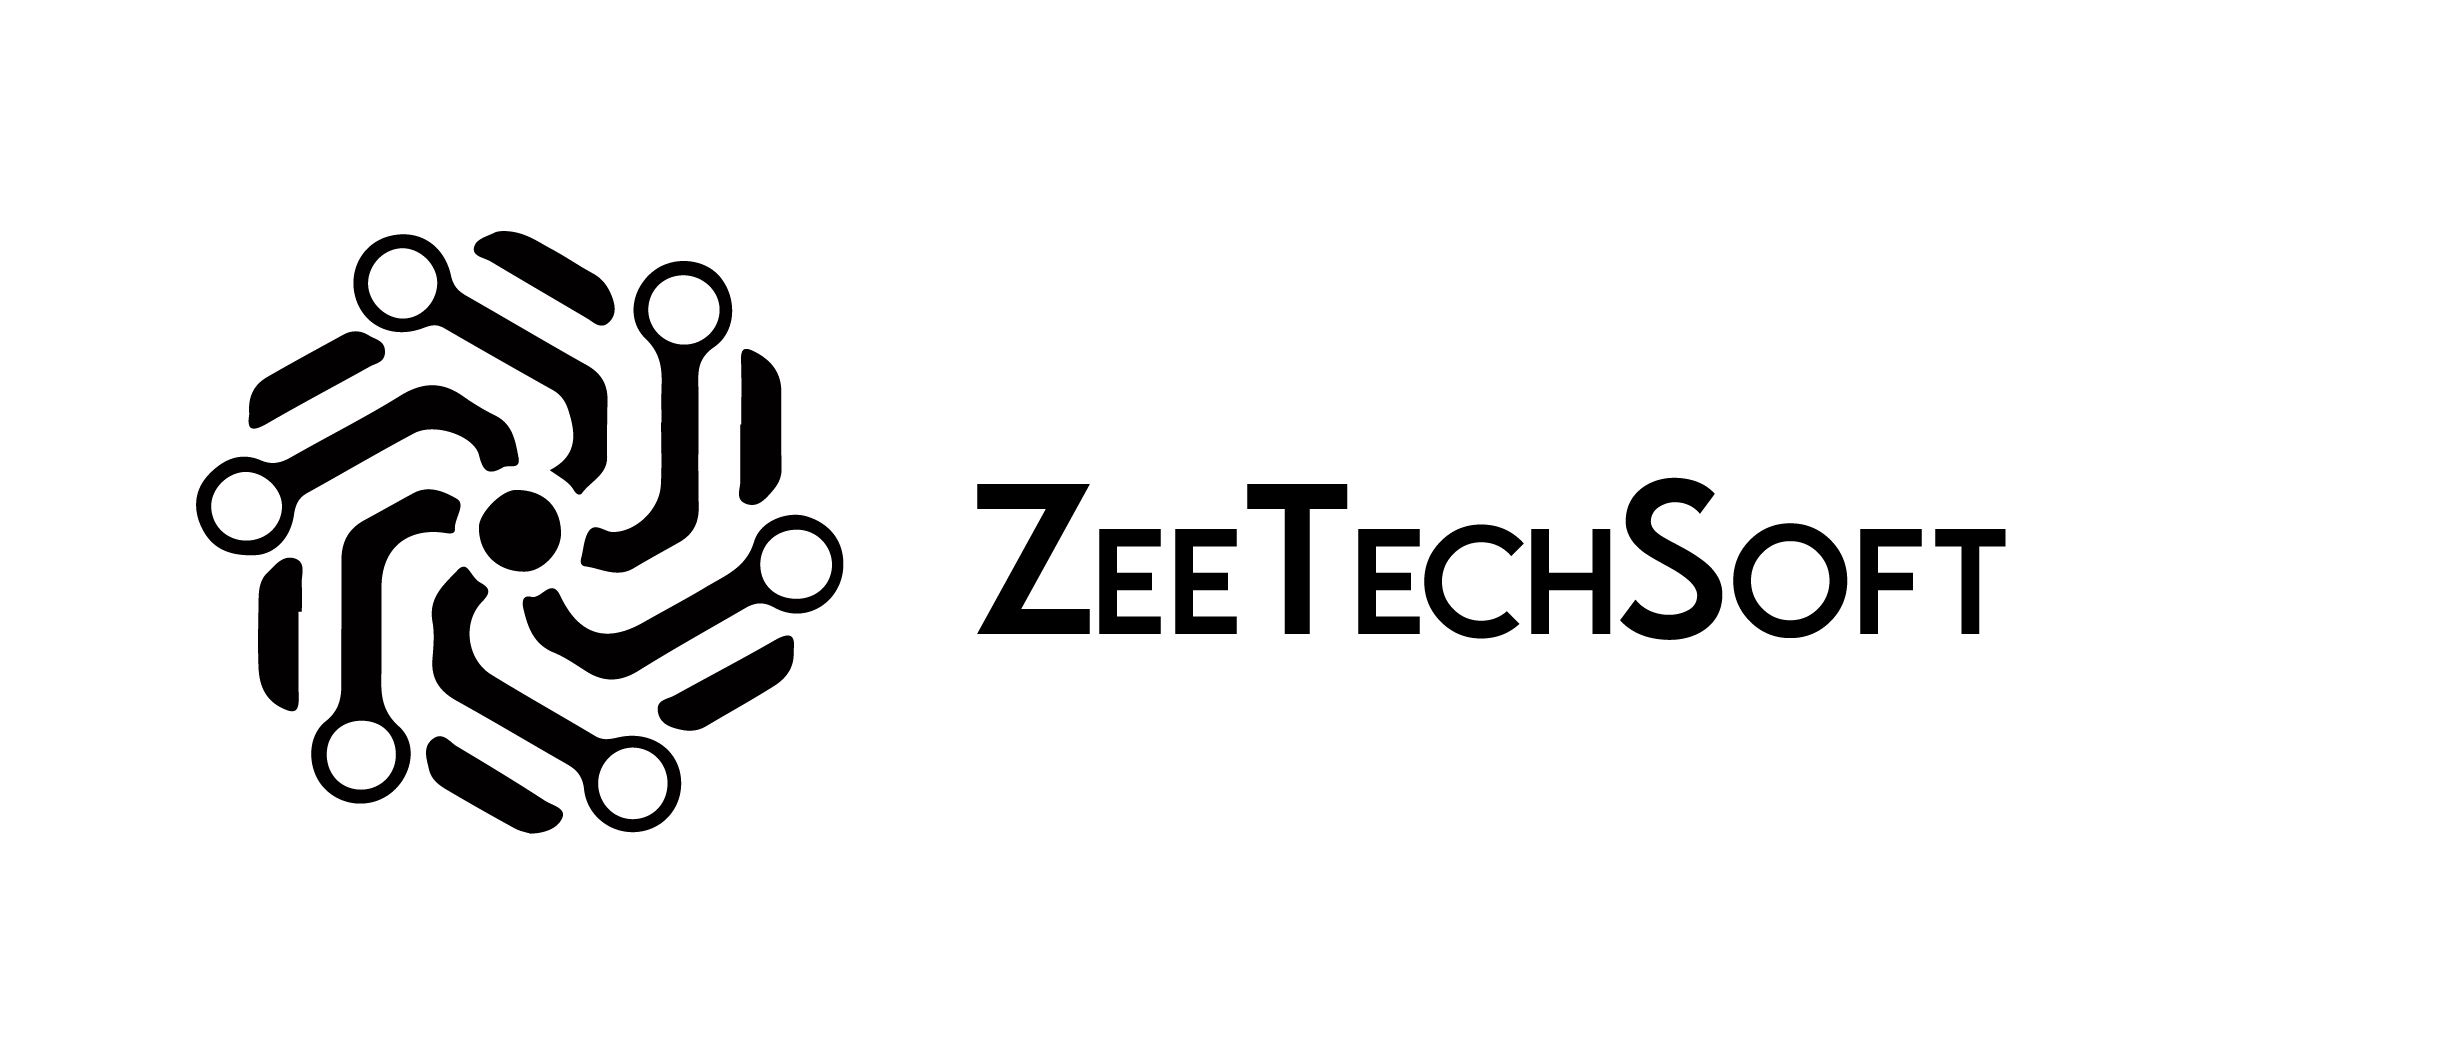 ZeeTechSoft